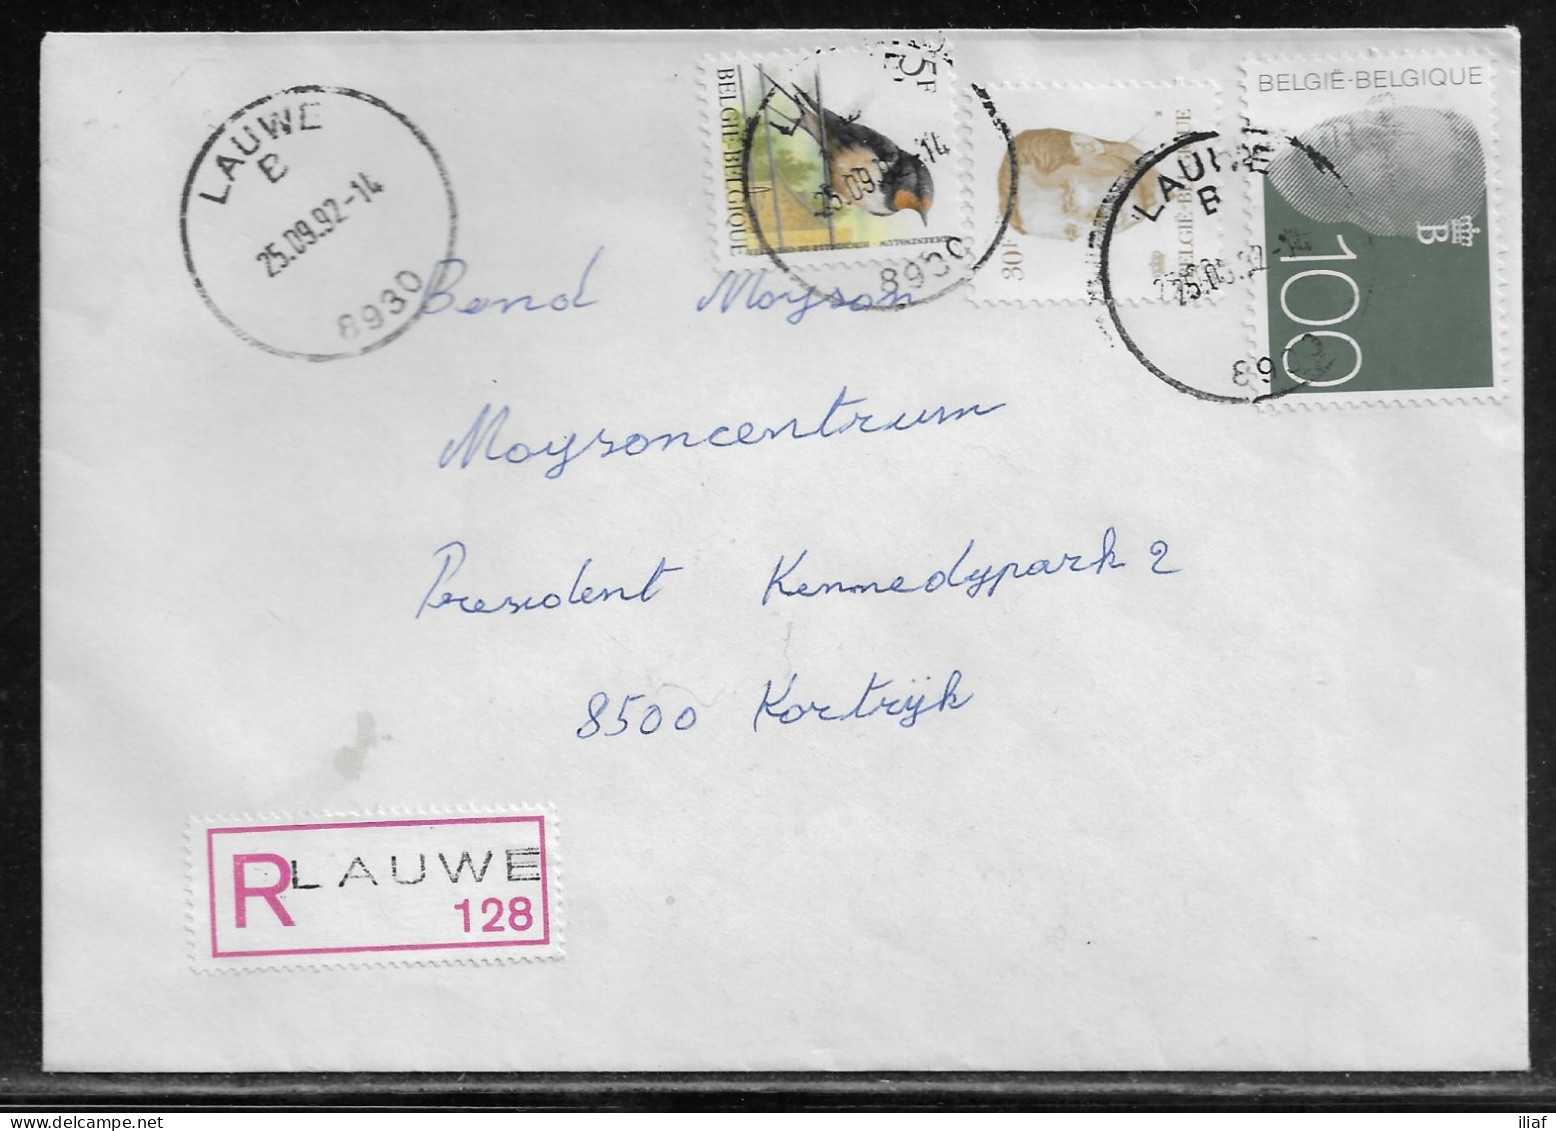 Belgium. Stamps Mi. 2527, Mi. 2533, Mi. 2212 On Registered Letter Sent From Lauwe On 25.09.1992 For Kortrijk. - Briefe U. Dokumente